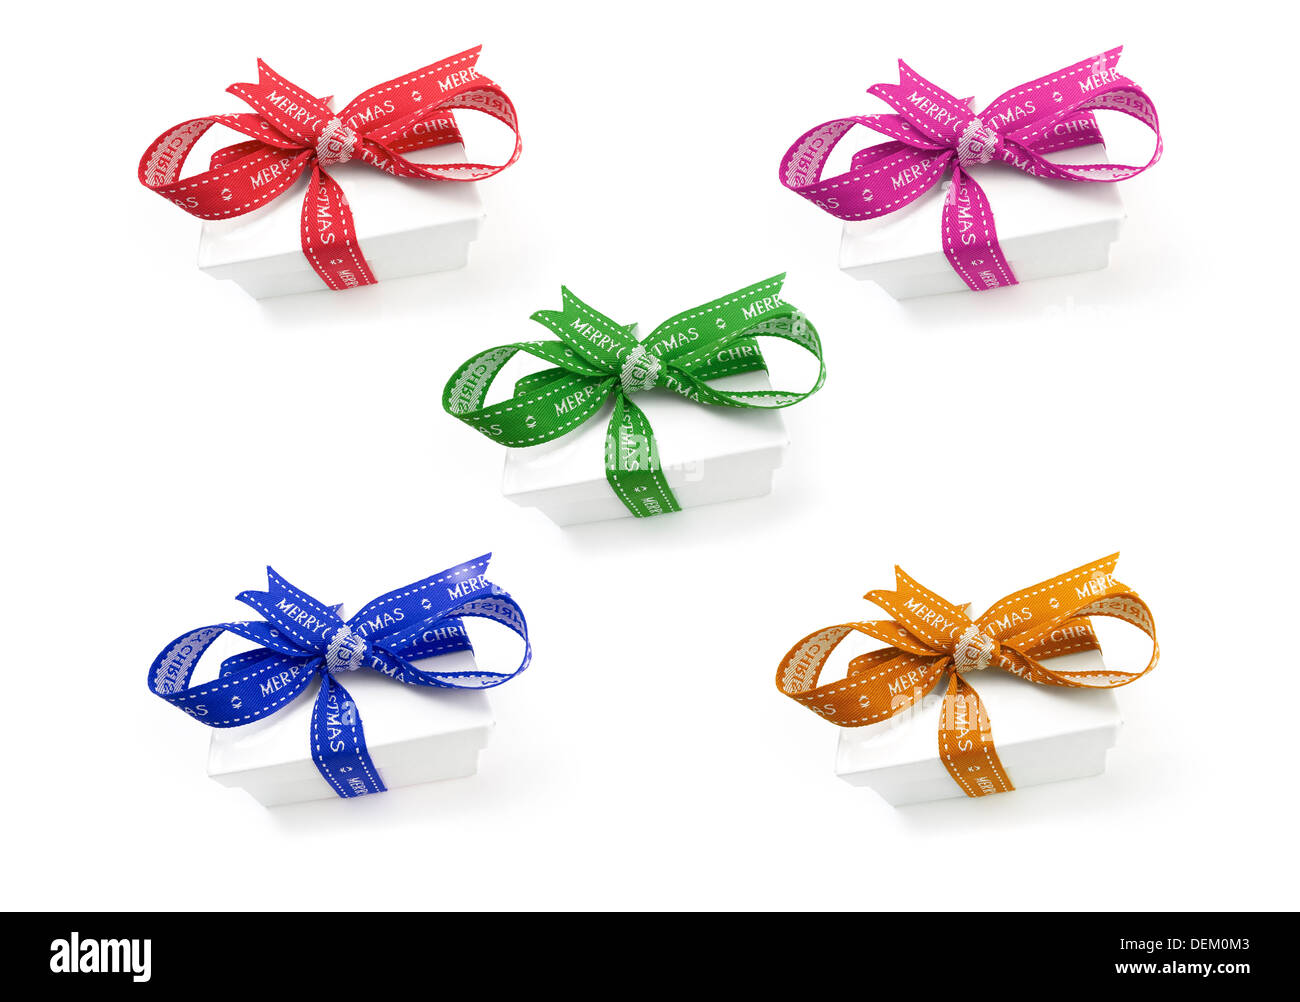 Eine Auswahl an umschlossenen Weihnachten präsentiert mit bunten Bändern und Schleifen auf einem weißen Hintergrund. Stockfoto